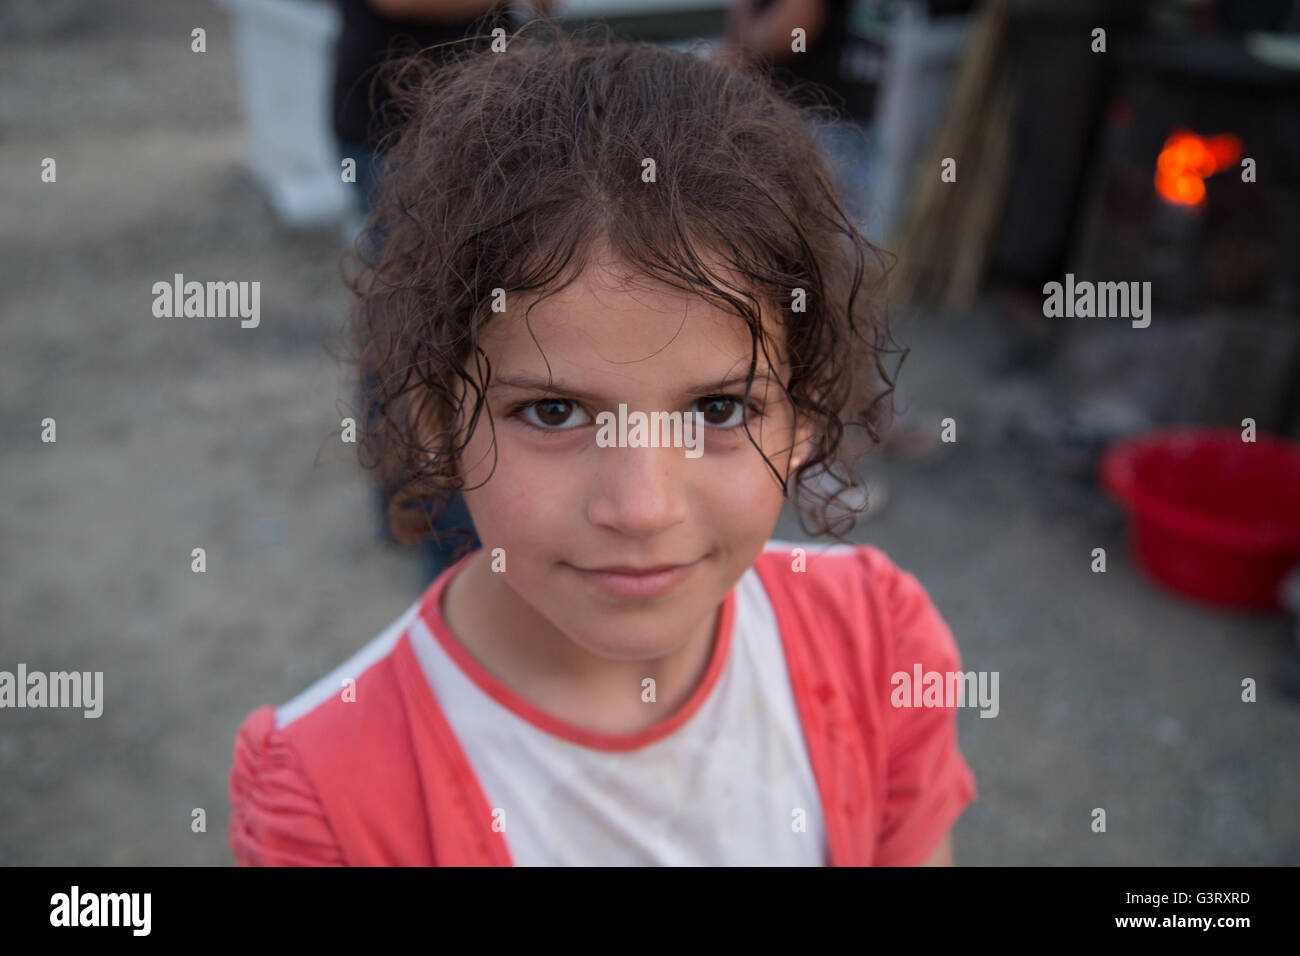 Portrait d'une jeune fille syrienne kurde dans le camp de réfugiés de Idomeni, Grèce, près de la frontière macédonienne. Banque D'Images